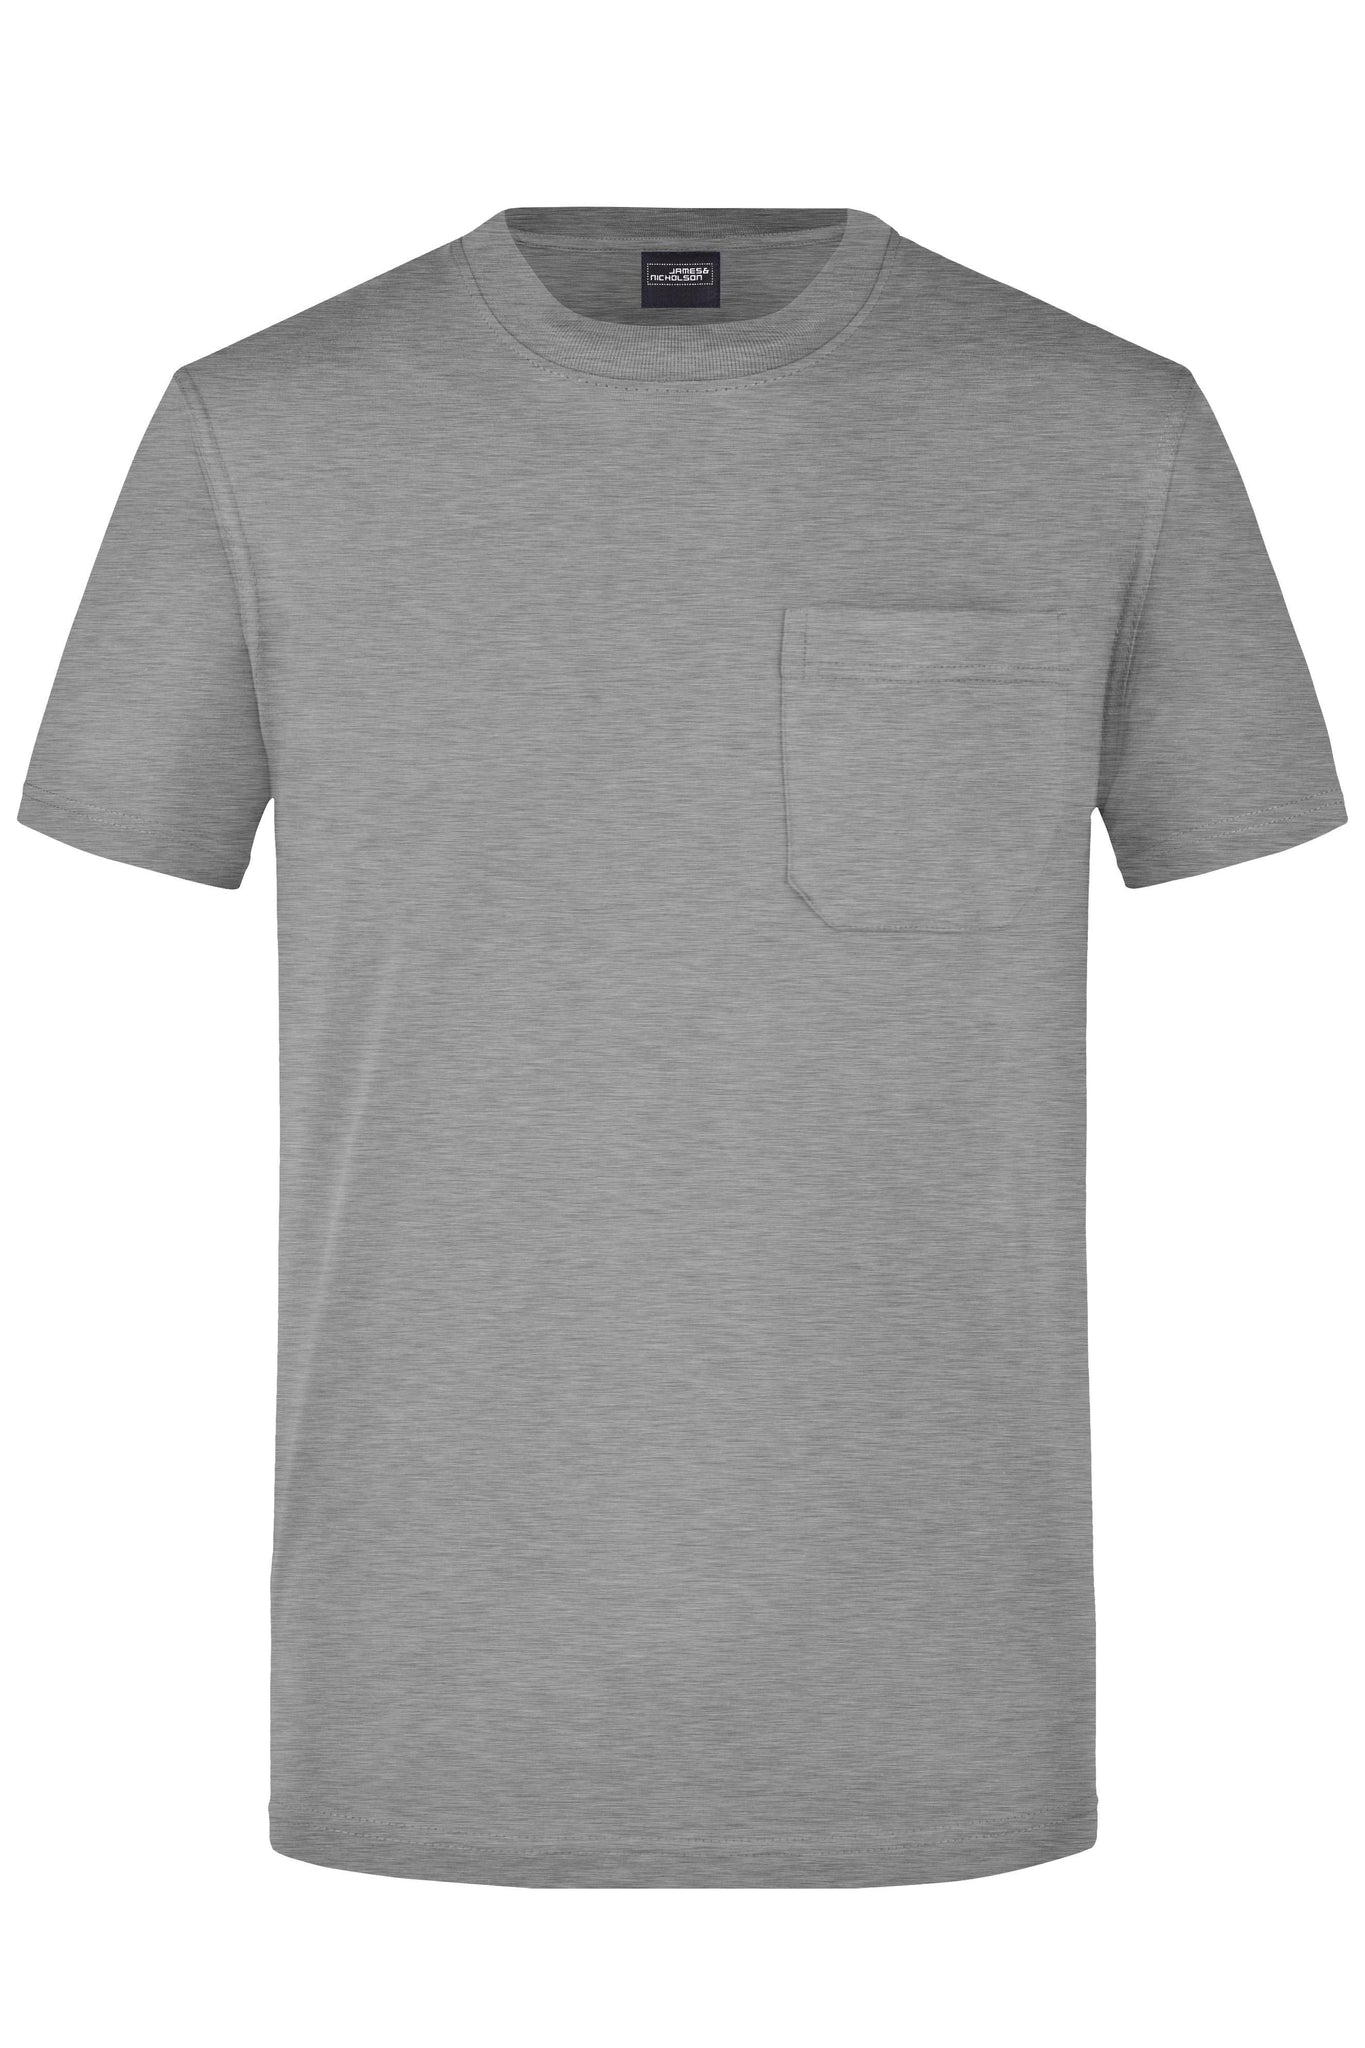 JN T-SHIRT POCKET - Arbejds T-Shirt - JA Profil 